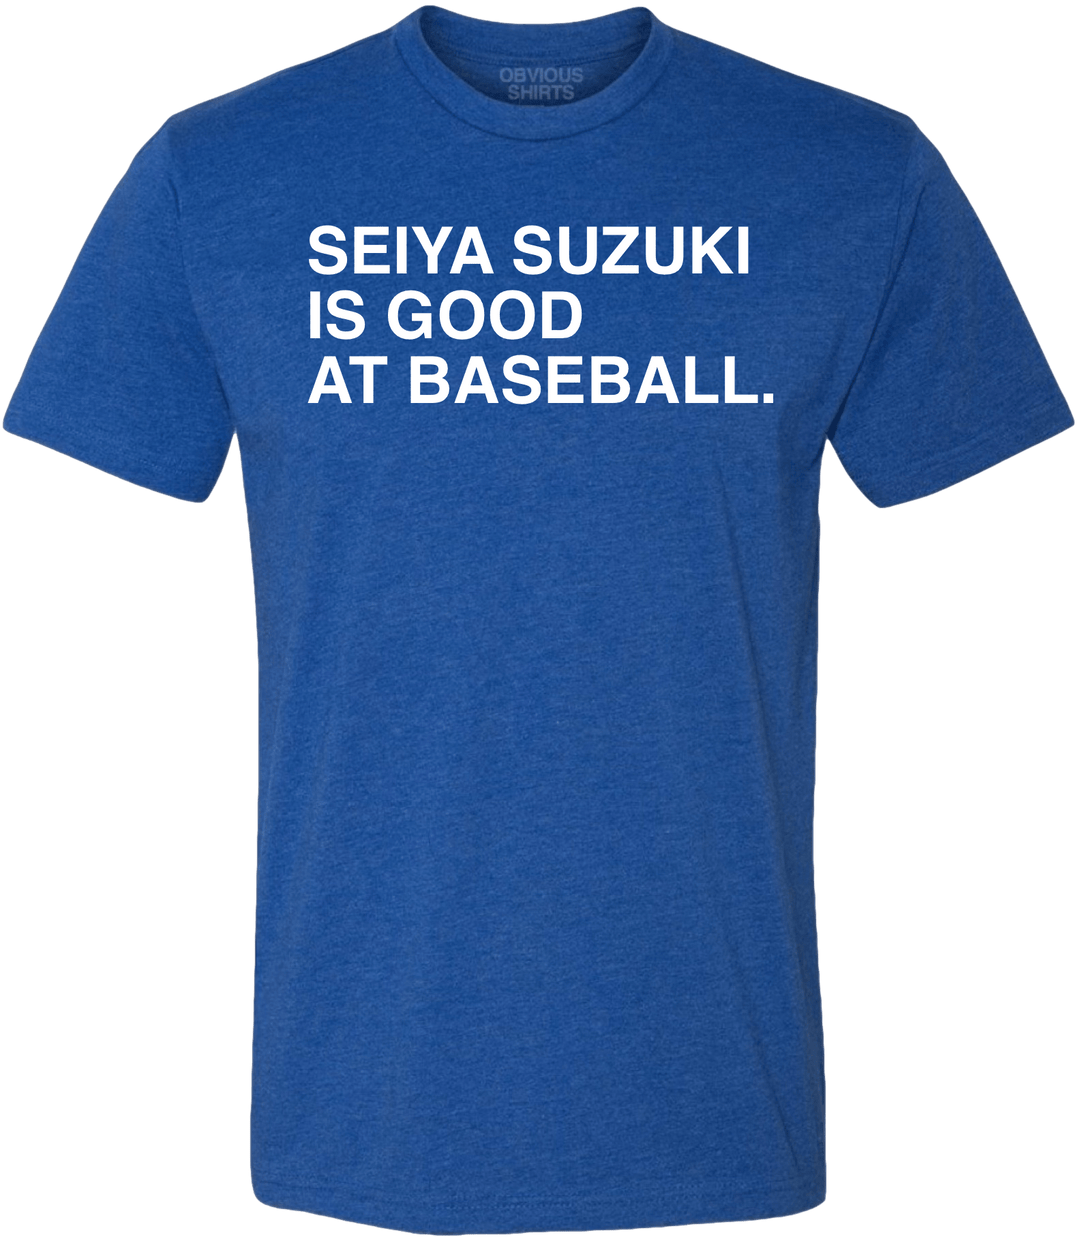 SEIYA SUZUKI IS GOOD AT BASEBALL. - OBVIOUS SHIRTS